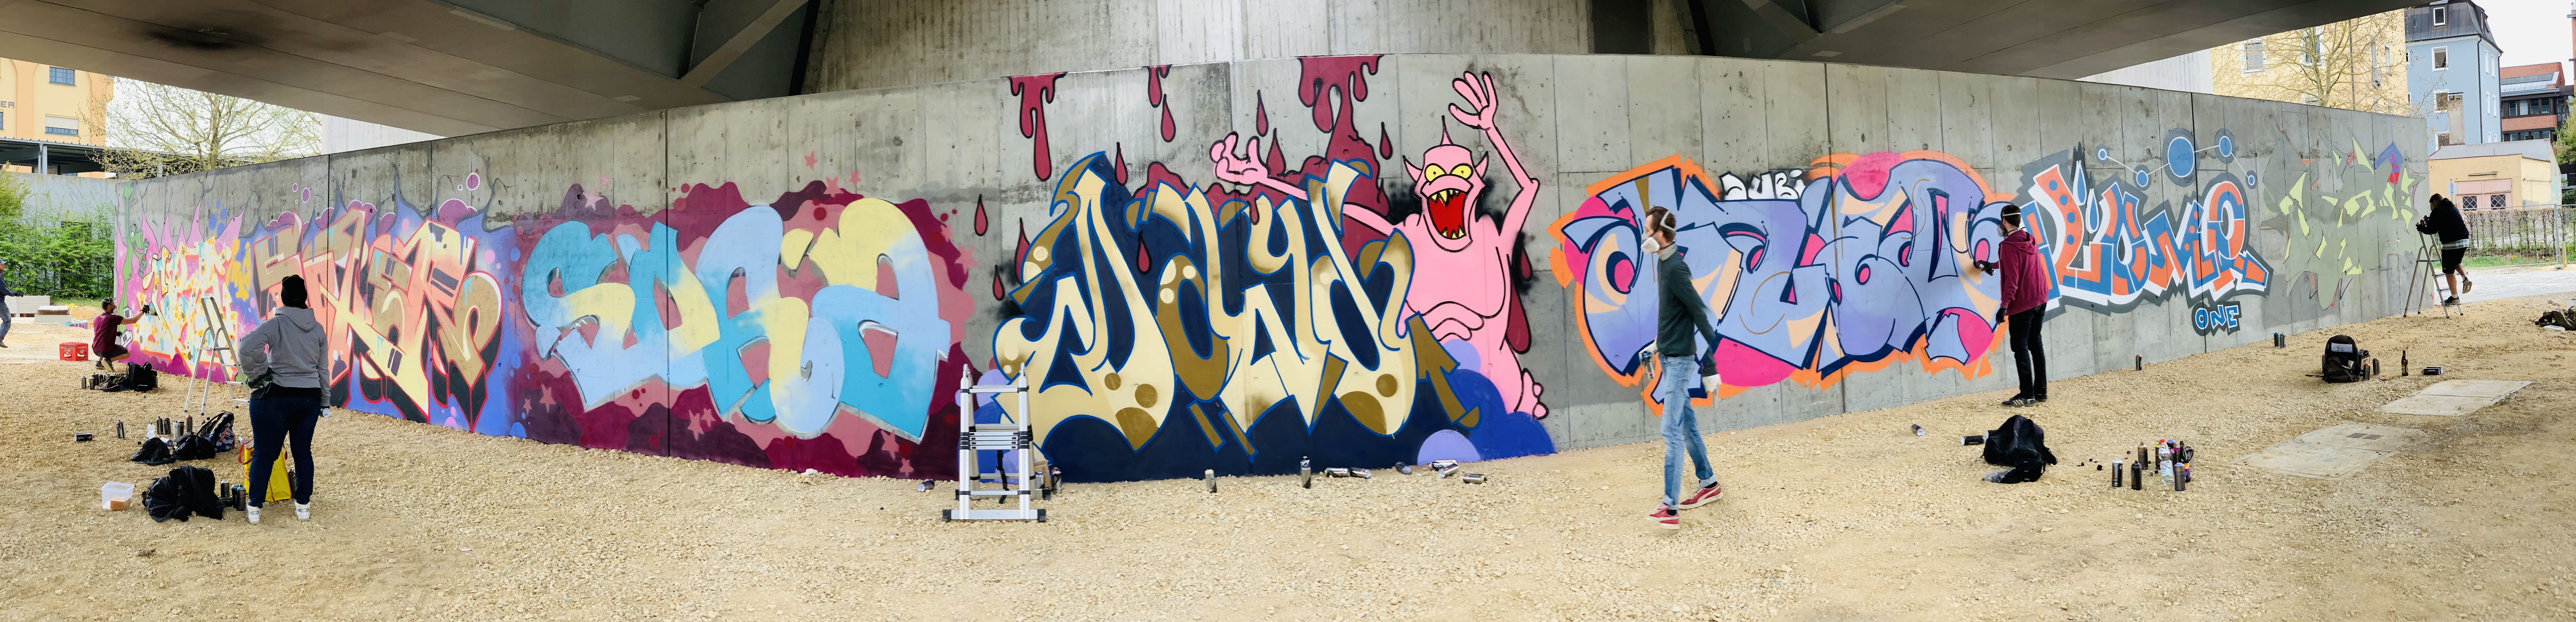 Graffiti an der HWS Wand. Die graue Betonwand in Panoramaansicht, davor sind fünf Graffitikünstler zu sehen, drei davon bearbeiten noch ihr Kunstwerk. Sieben Schriftzüge in den unterschiedlichsten Farben, in der Mitte ein rosa Monster das die Arme in die Luft streckt